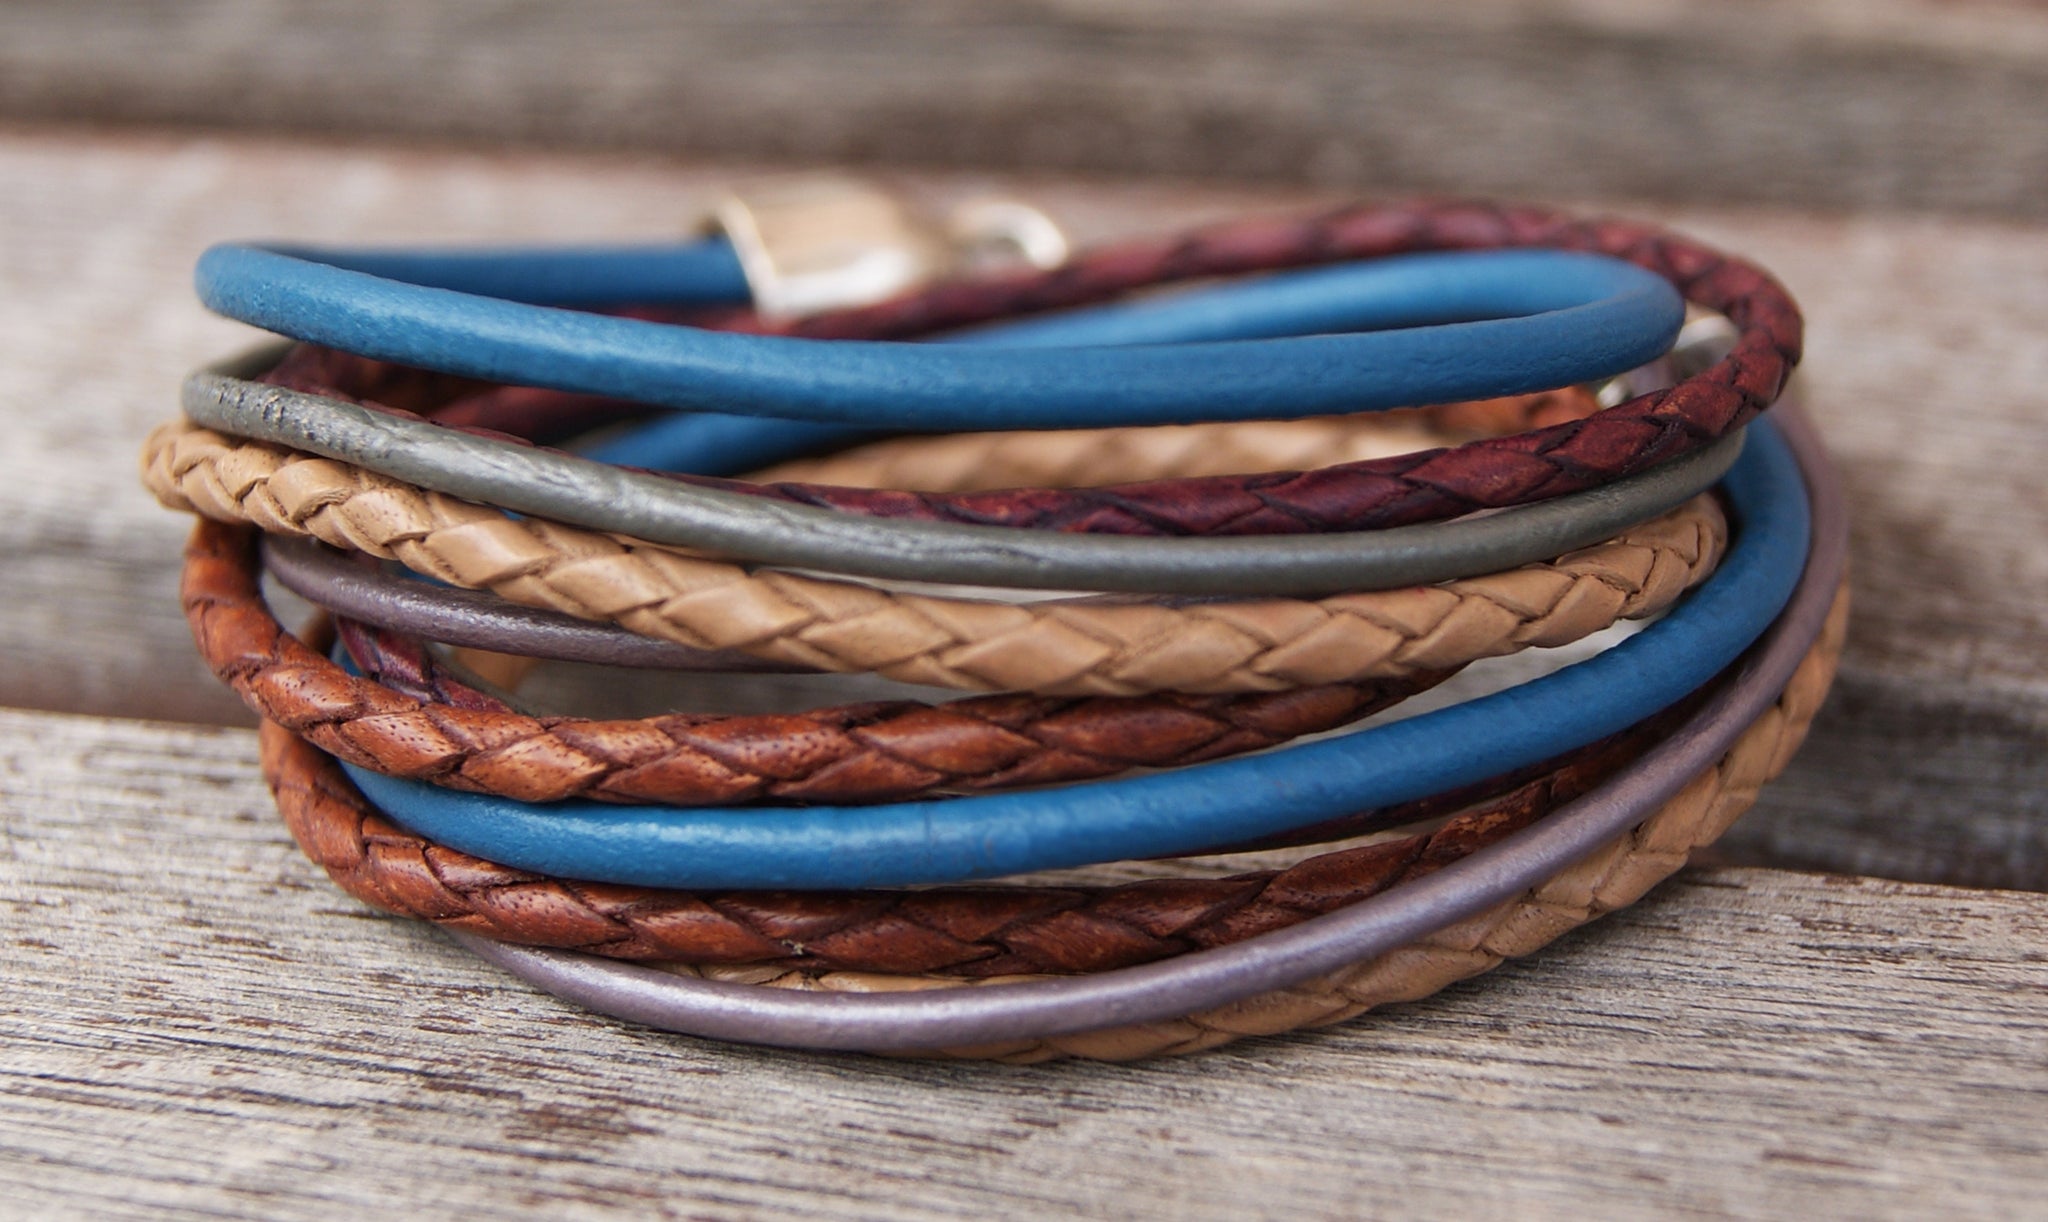 Leather Bracelets for Women